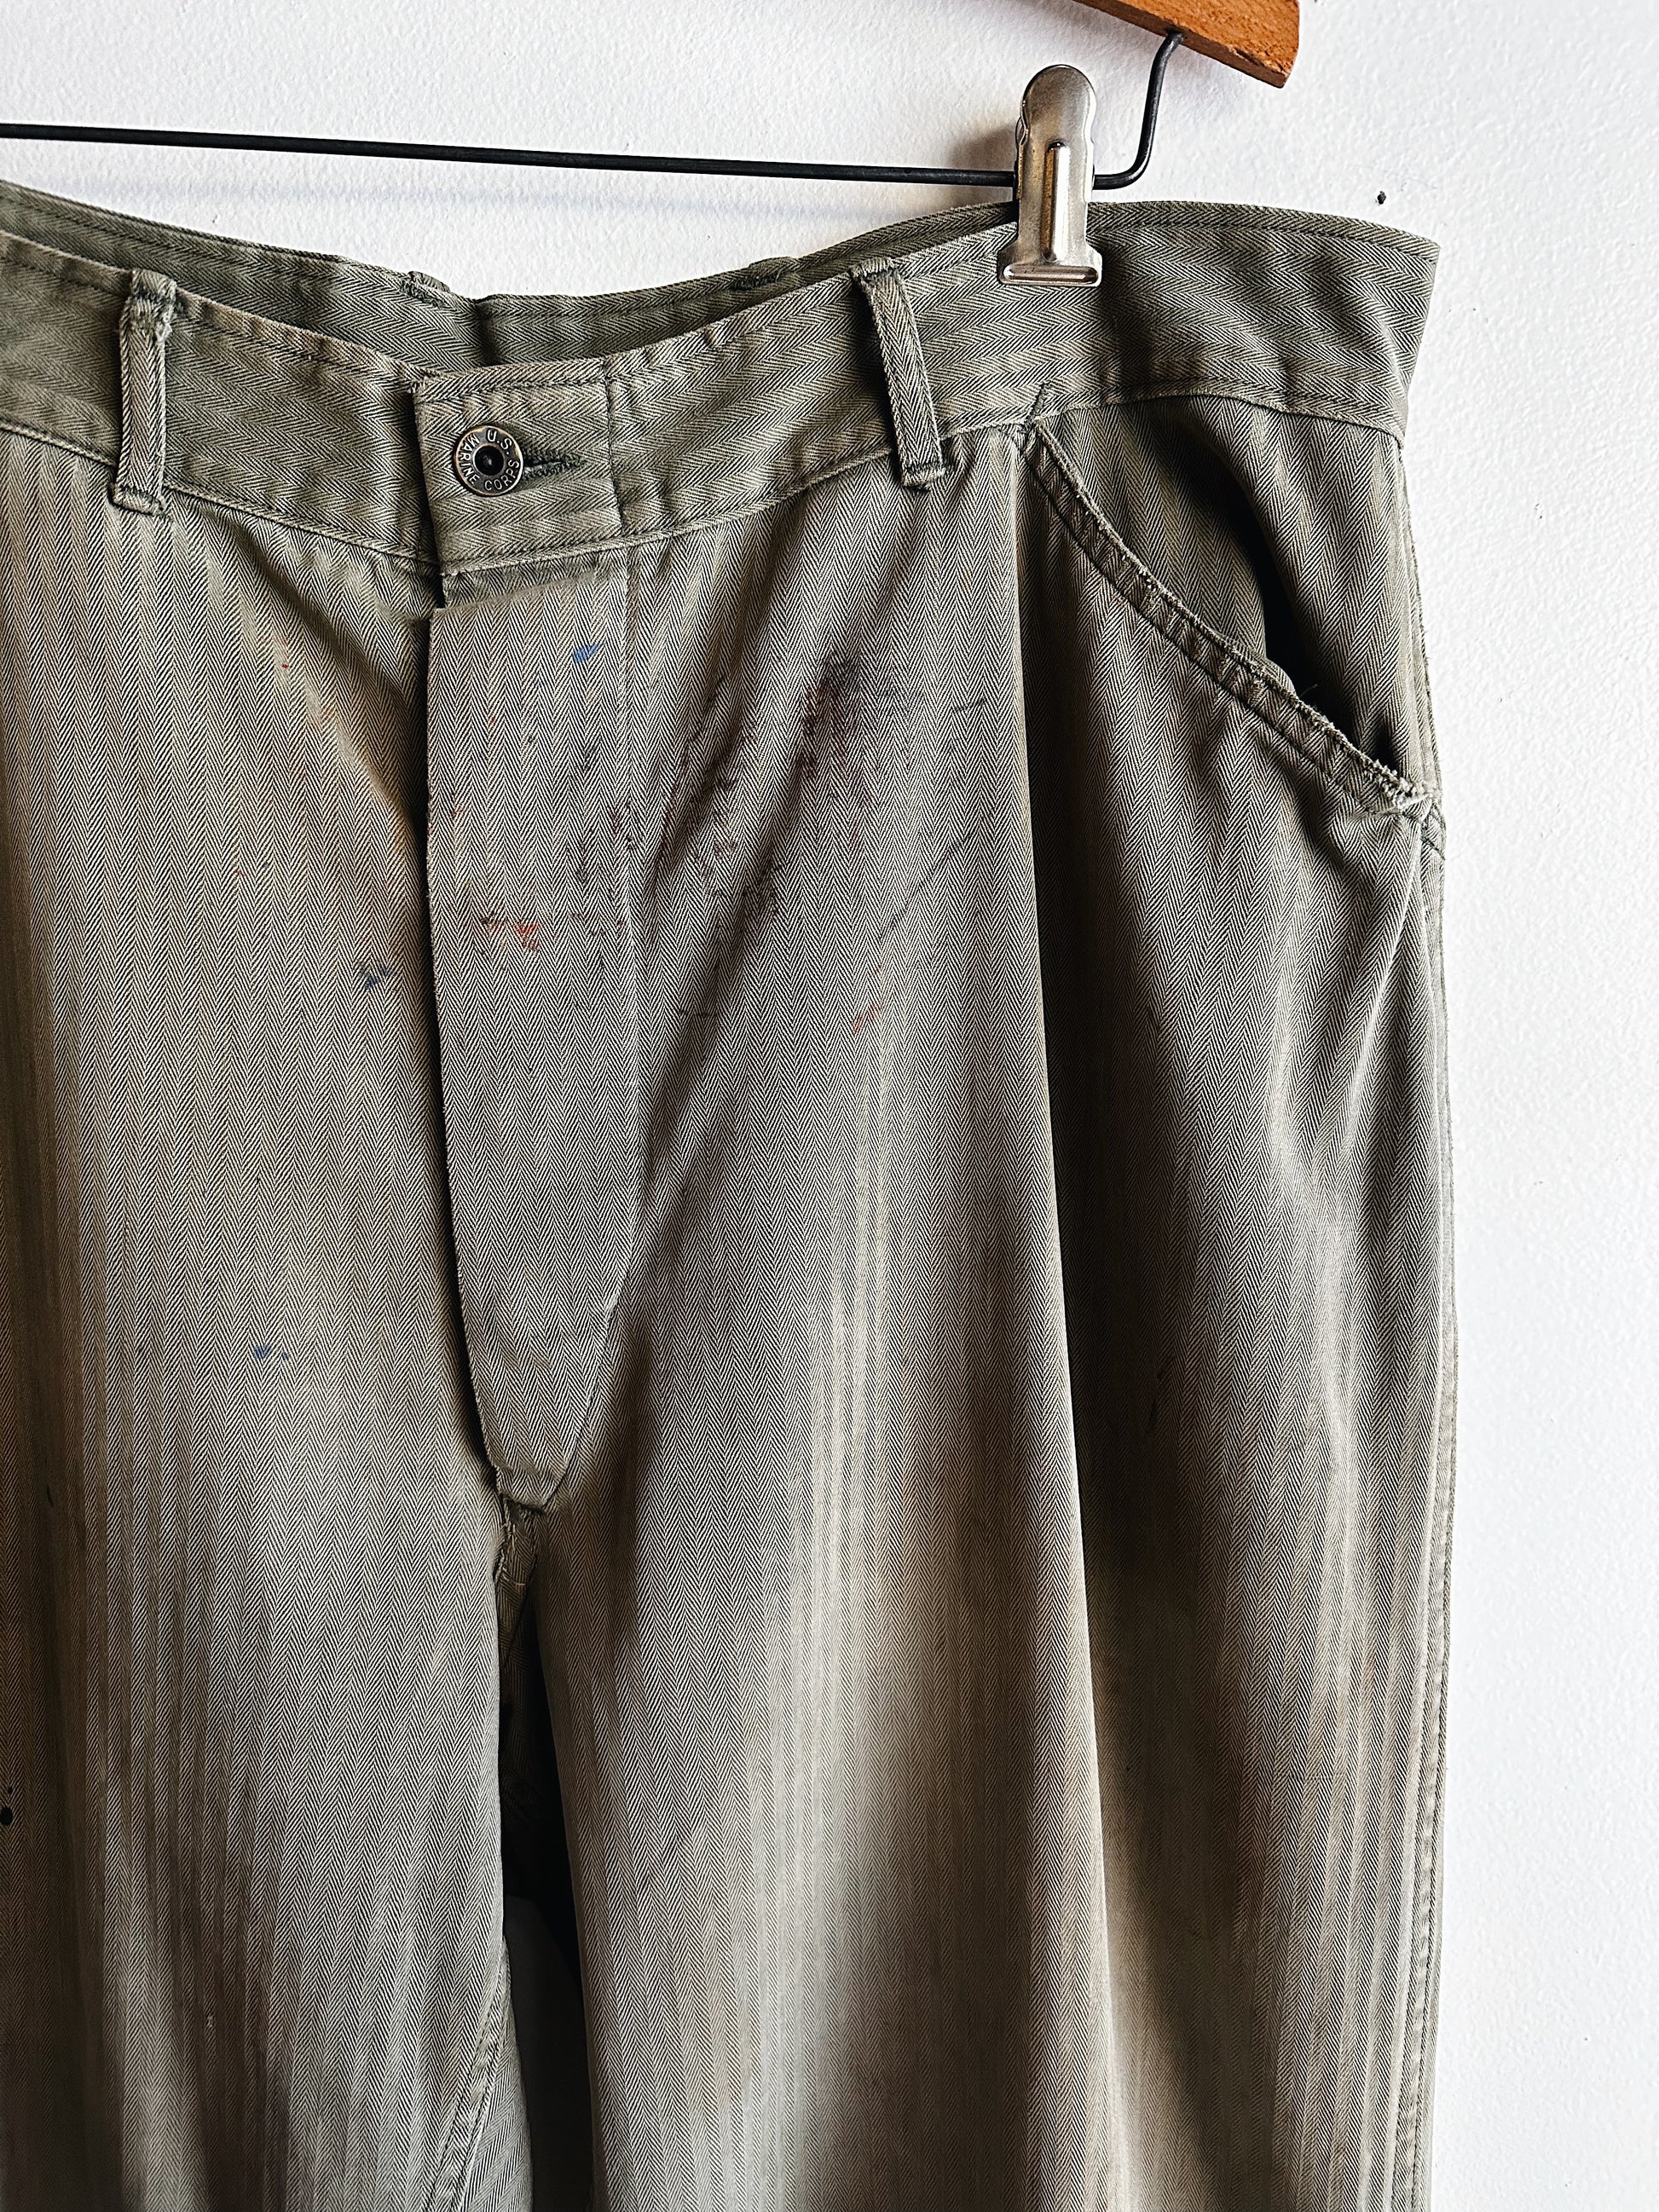 usmc p47 trousers front details 